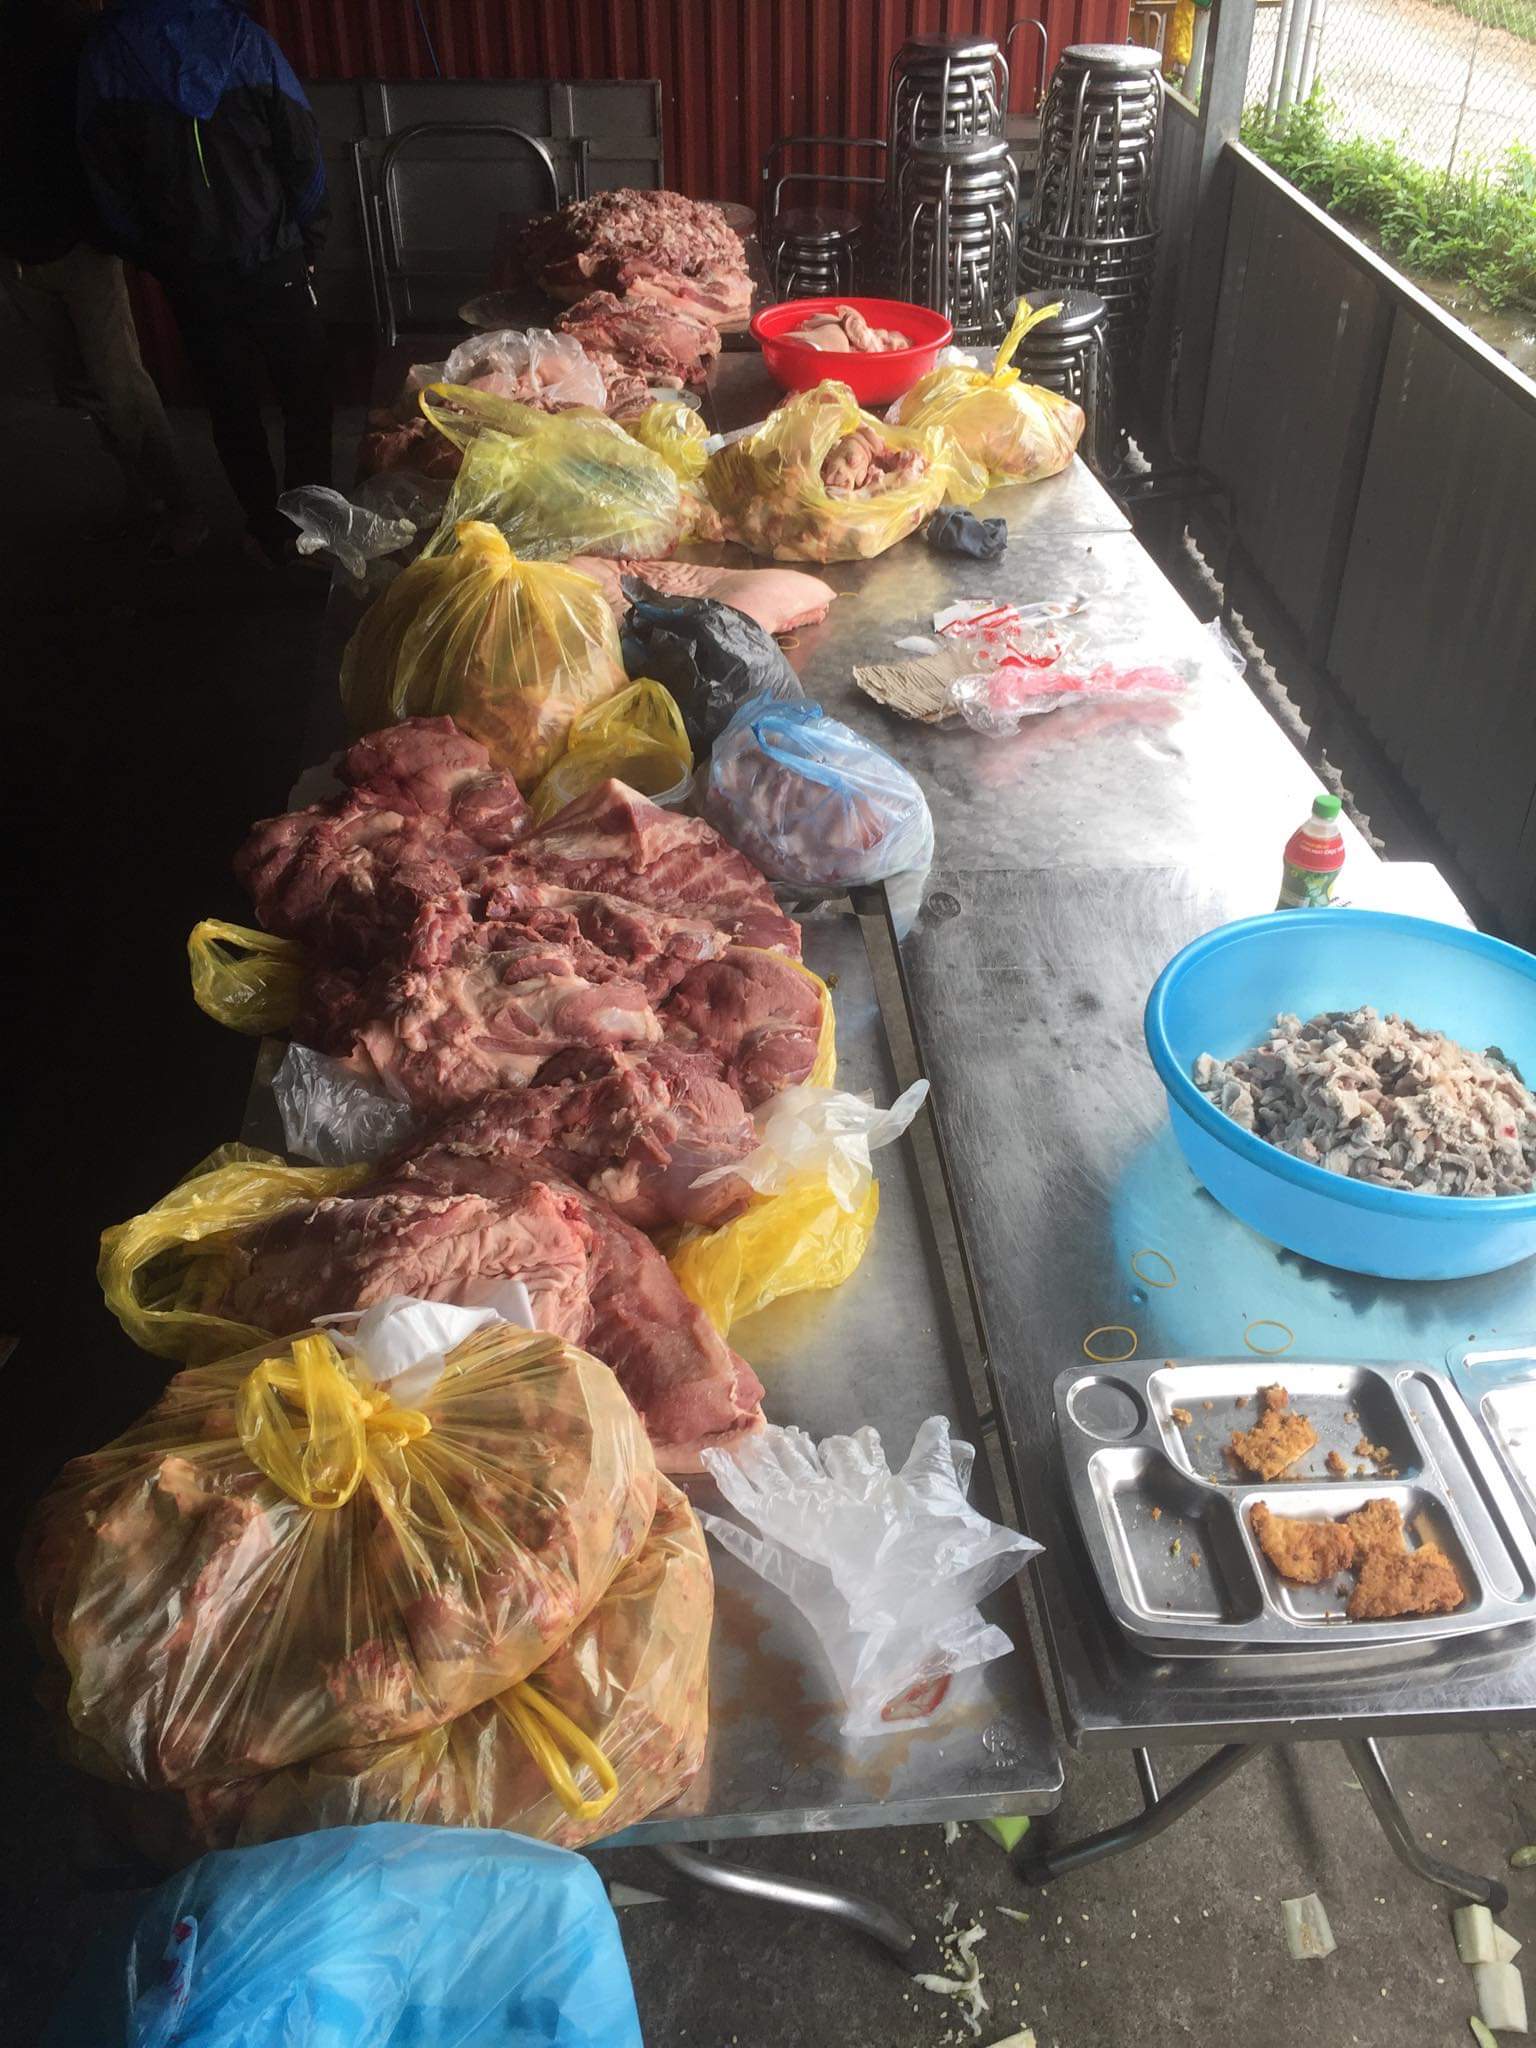 Gần 300kg thịt lợn được mua để chuẩn bị 1200 suất cơm cho các em học sinh trên địa bàn xã Thanh Kim - huyện Sapa sau đó đã phải tiêu hủy vì không đảm bảo VSATTP